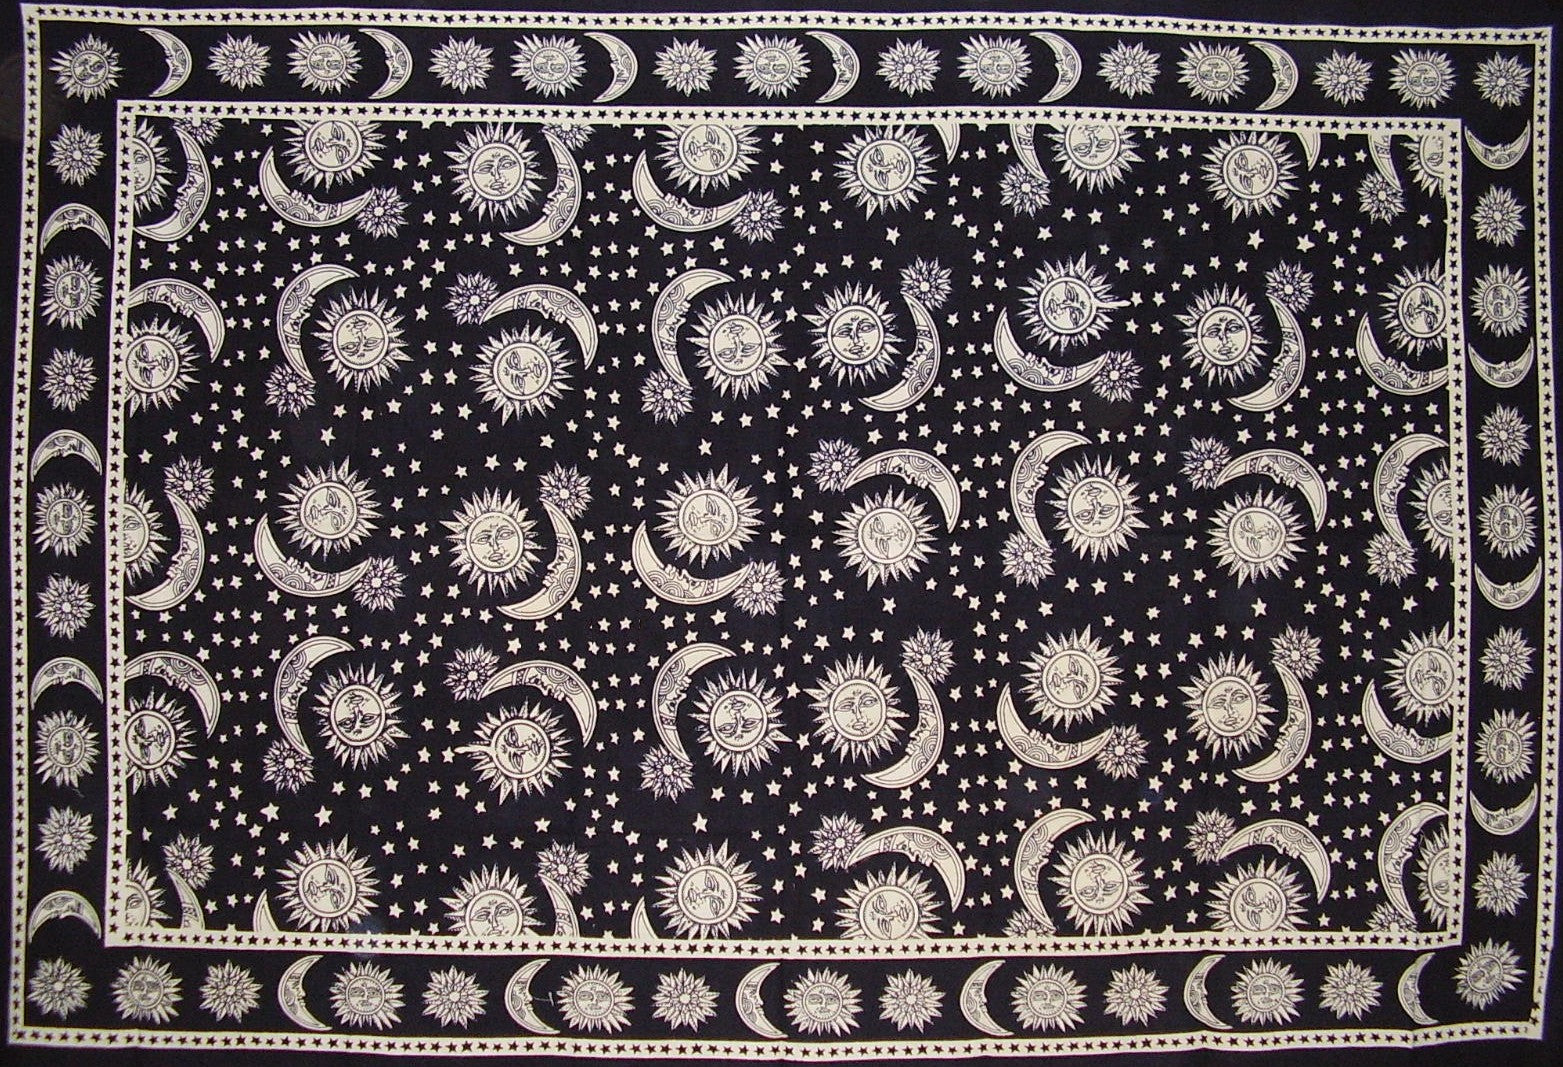 棉質天體鋪布或桌布 90 吋 x 60 吋黑白